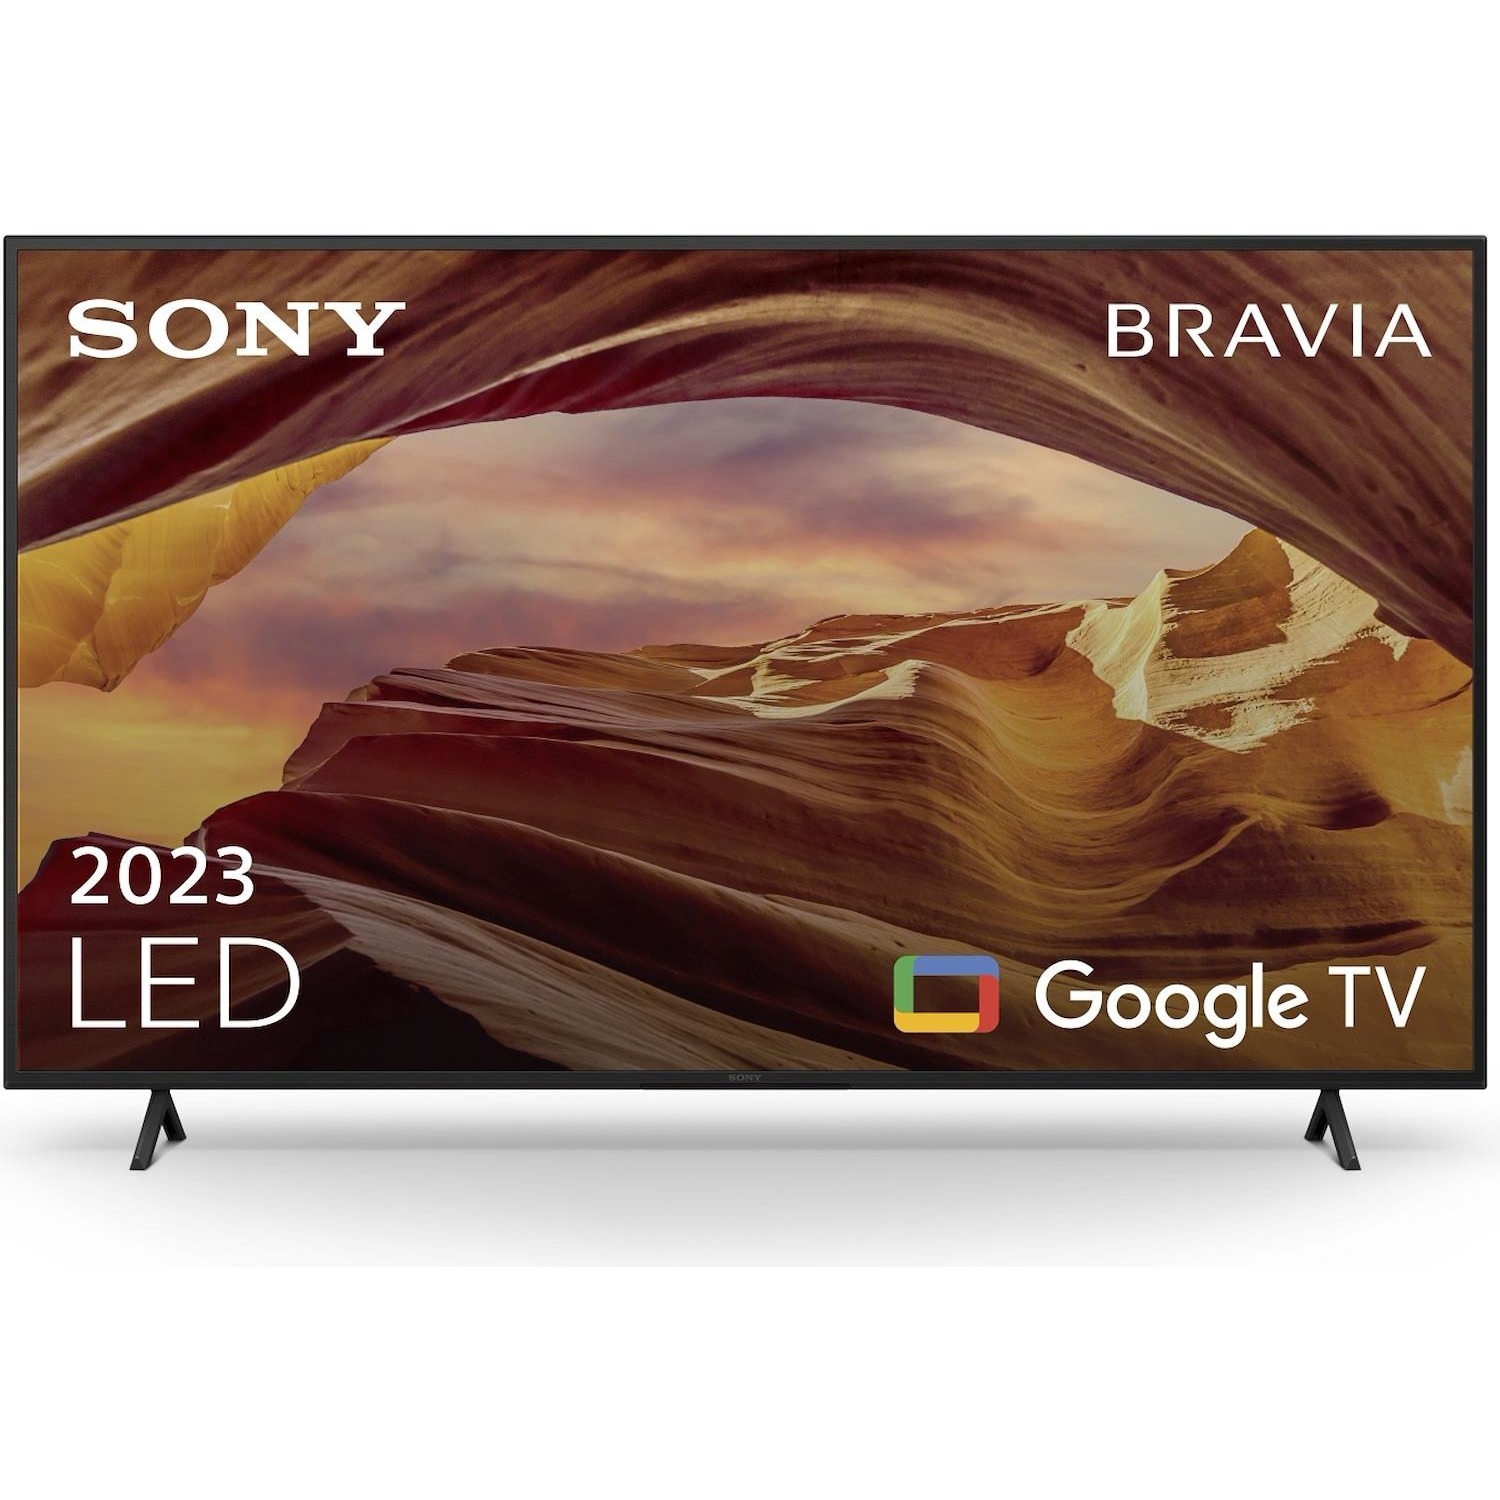 Immagine per TV LED Smart 4K UHD Sony 75X75W da DIMOStore